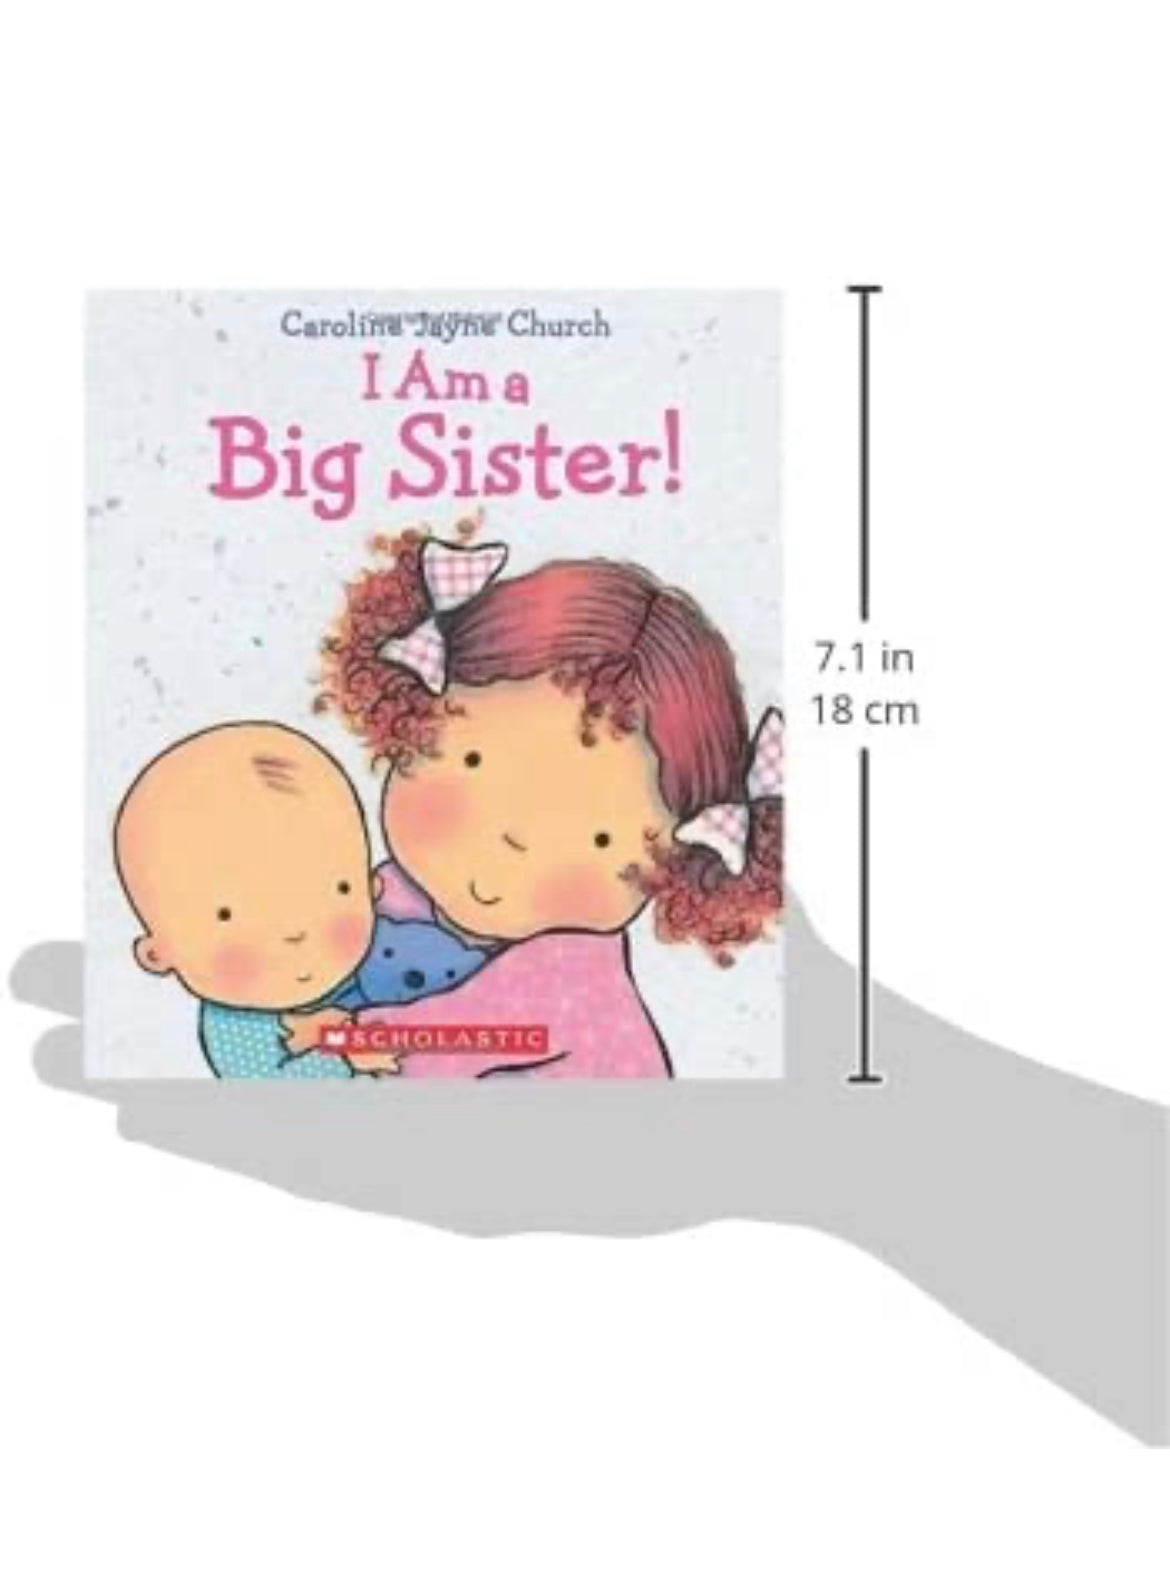 I Am a Big Sister (Caroline Jayne Church).